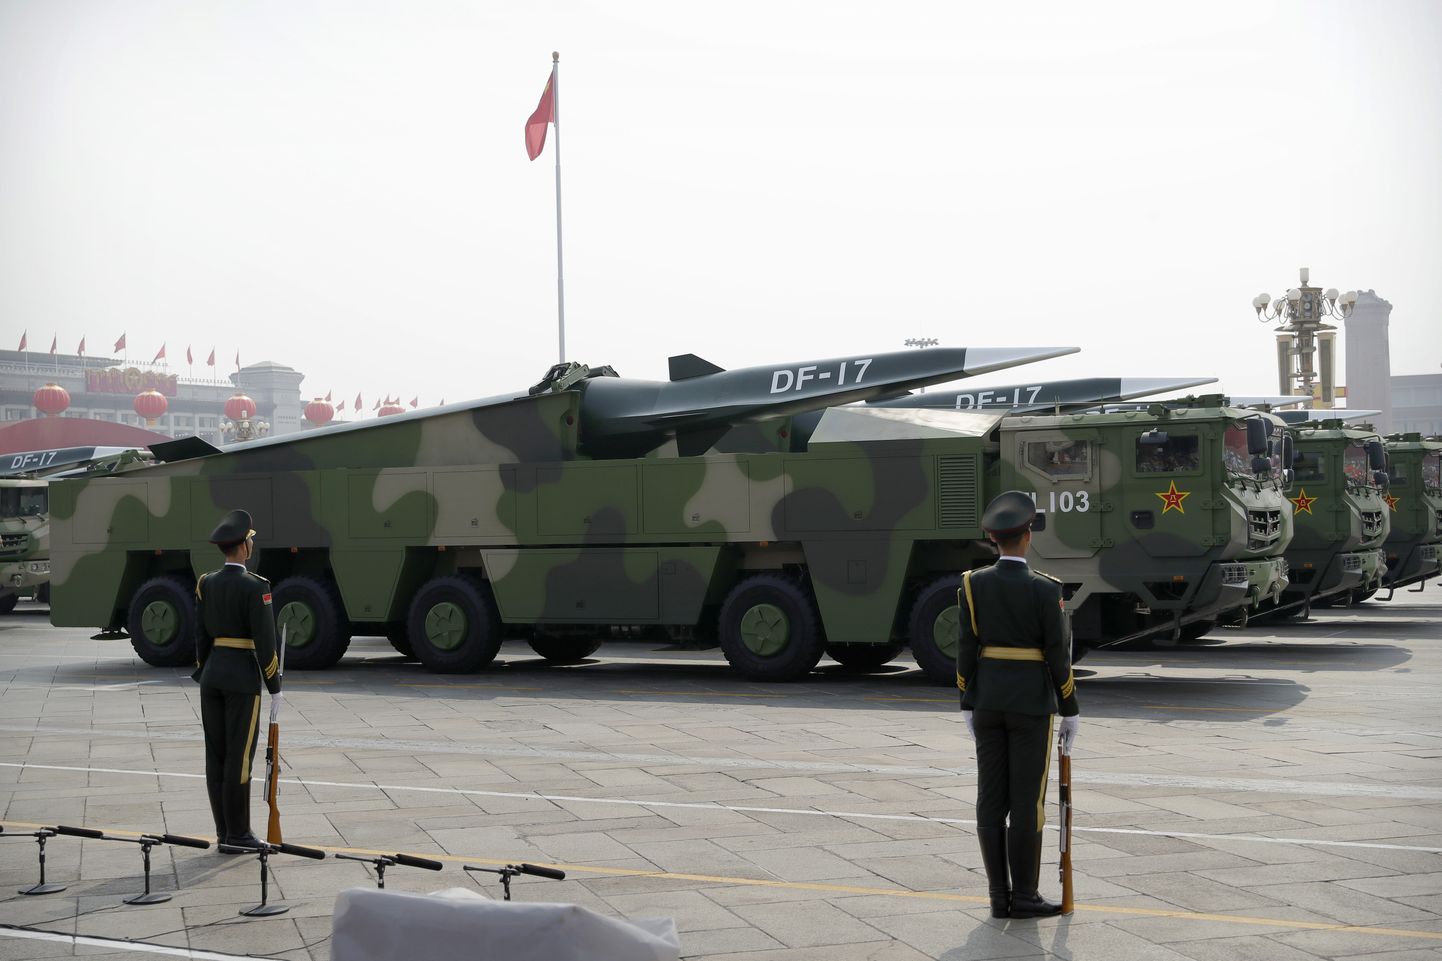 Hiina raketikandjal on uus ballistiline rakett DF-17, mis kannab hüperhelikiirusel relva. Just seda katsetatigi eile Taiwani ranniku lähedal.